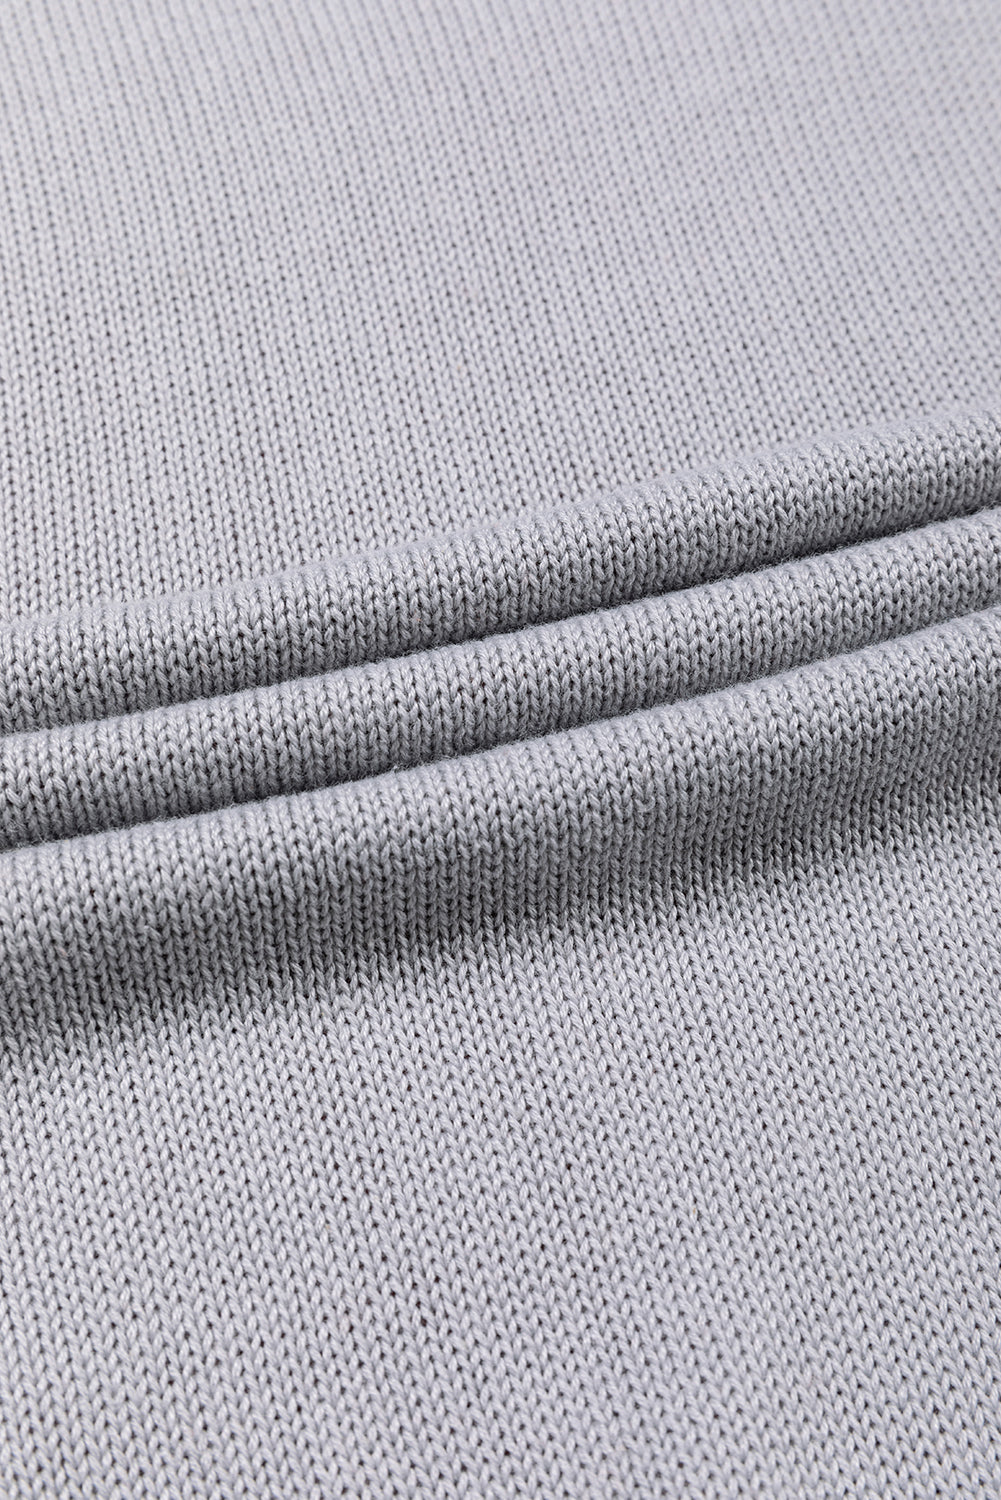 Grauer Colorblock-Pullover mit gerippten Ärmeln und Bischofsärmeln